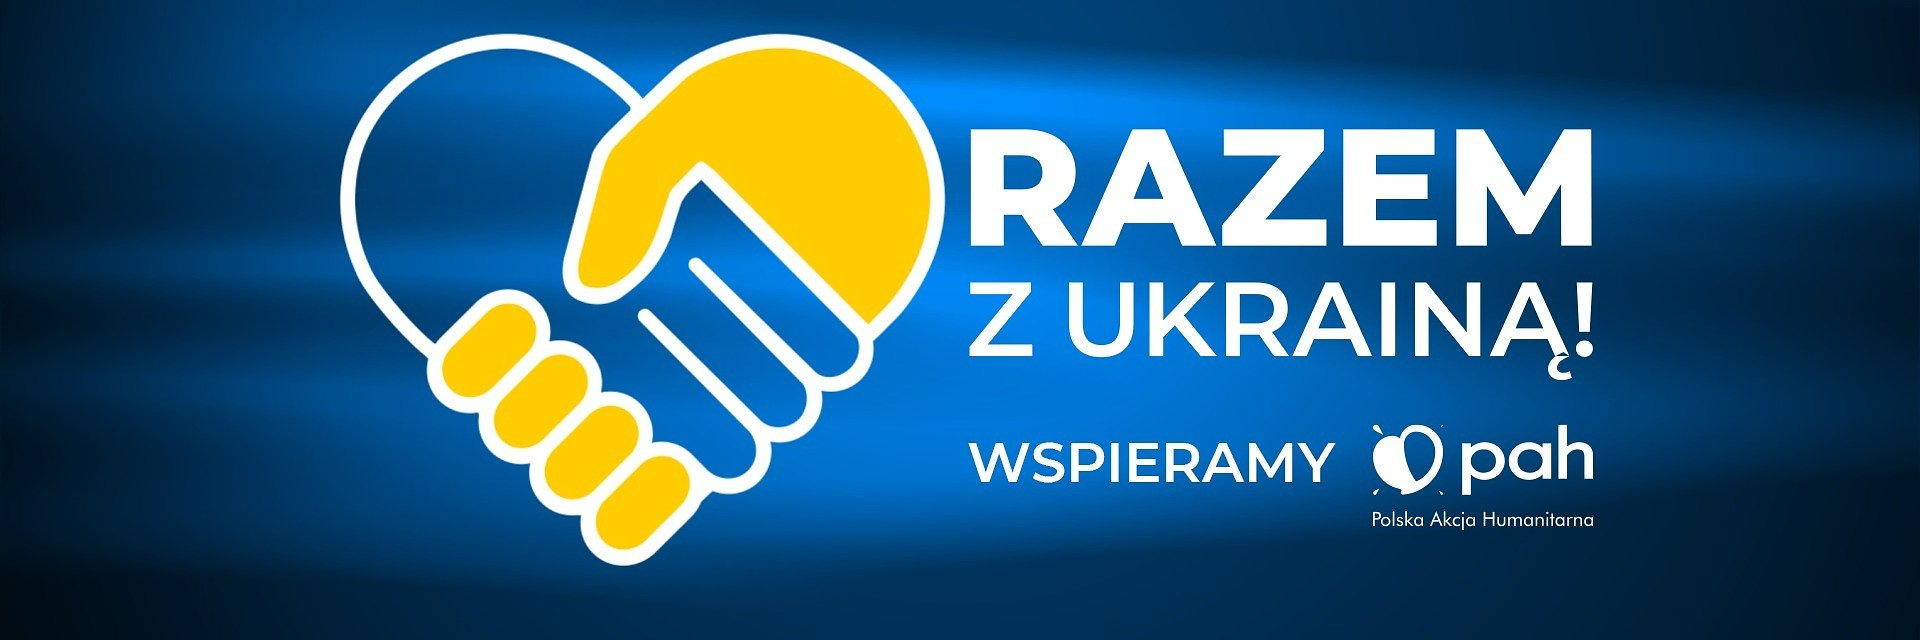 TVN nawiązuje współpracę z Polską Akcją Humanitarną. Jak włączyć się w pomoc Ukrainie?